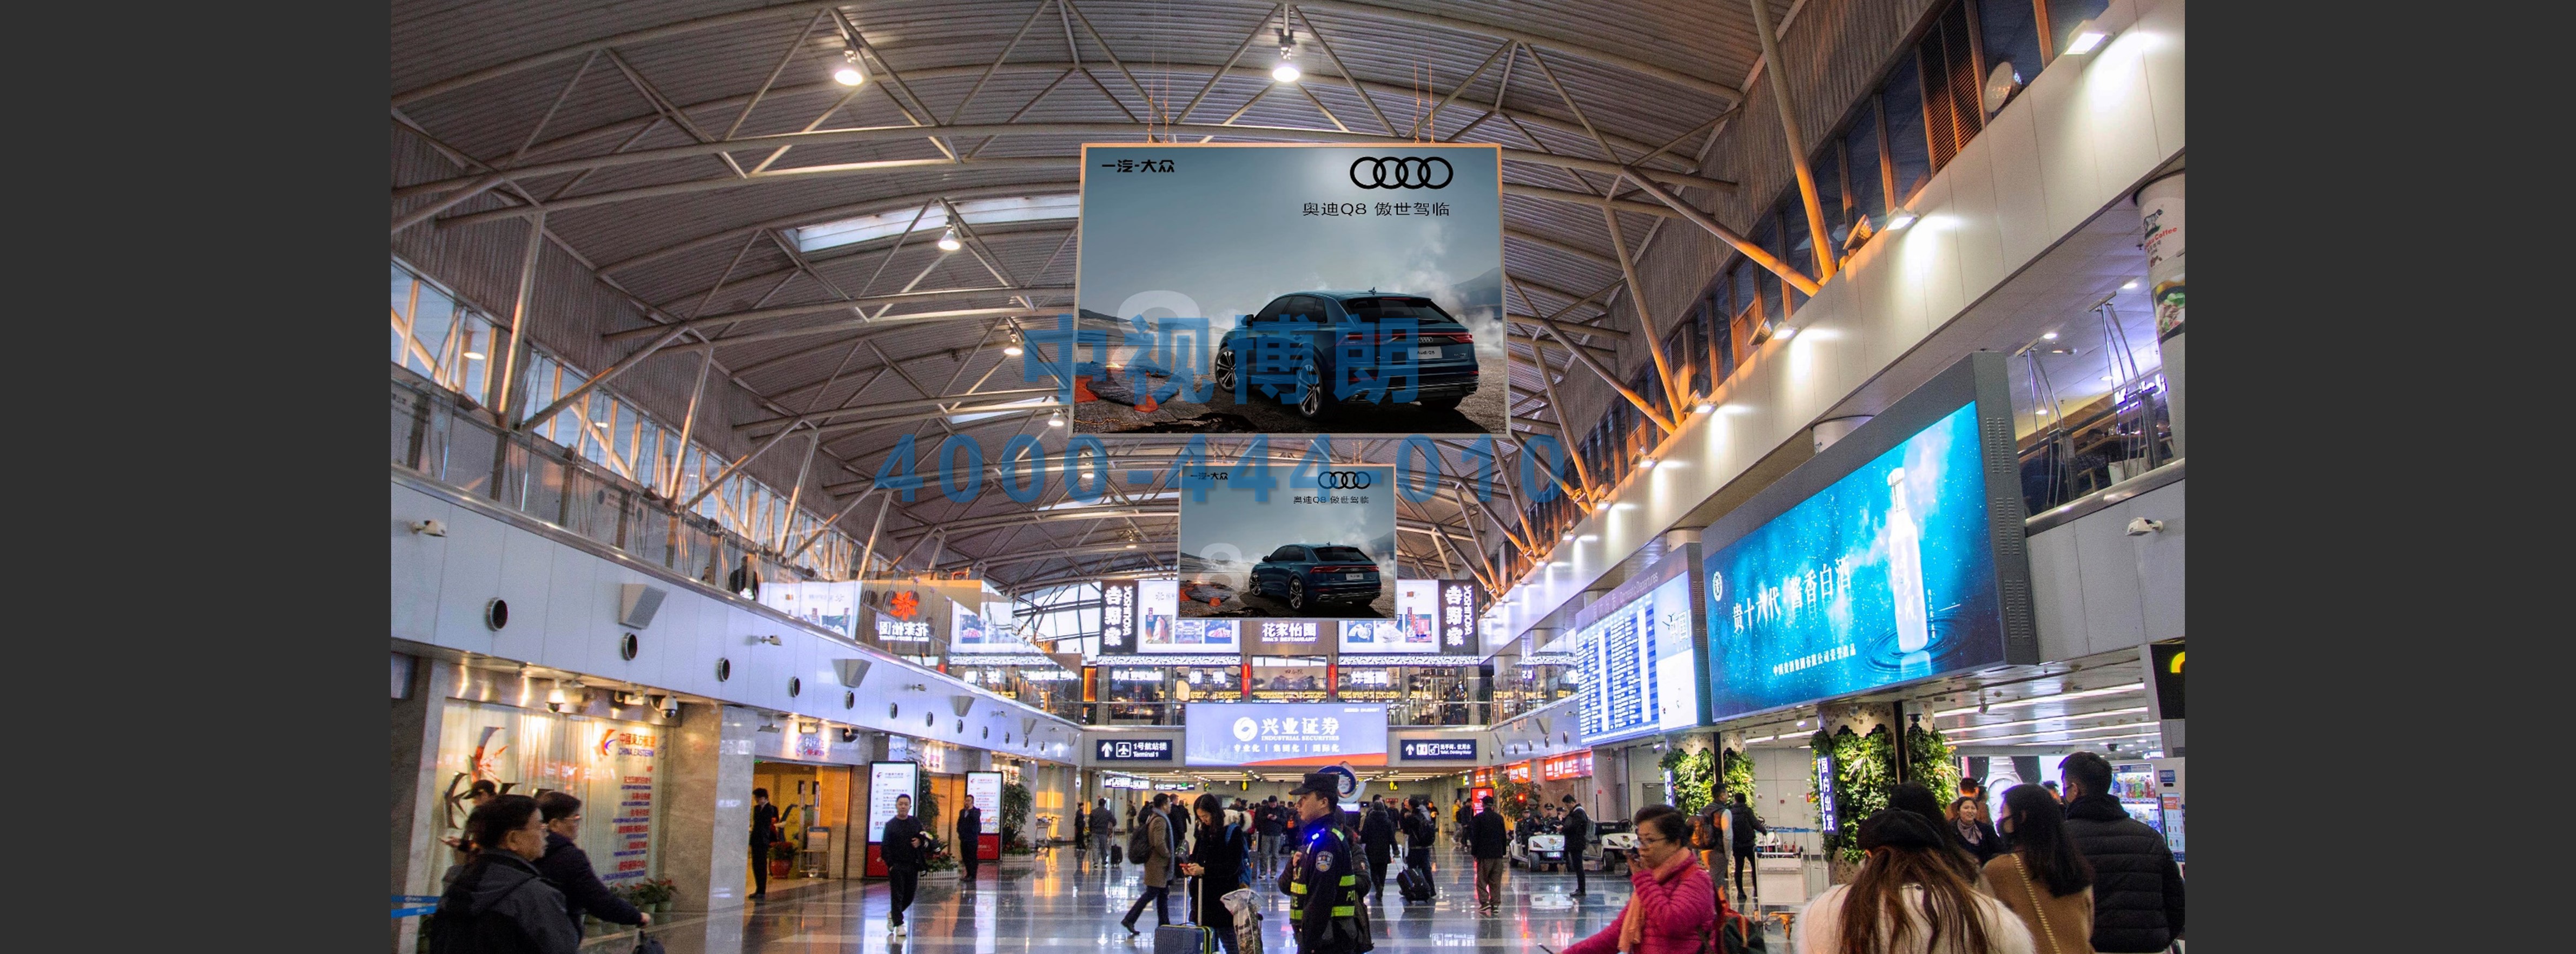 北京首都机场广告-T2国内国际值机厅3幅吊旗